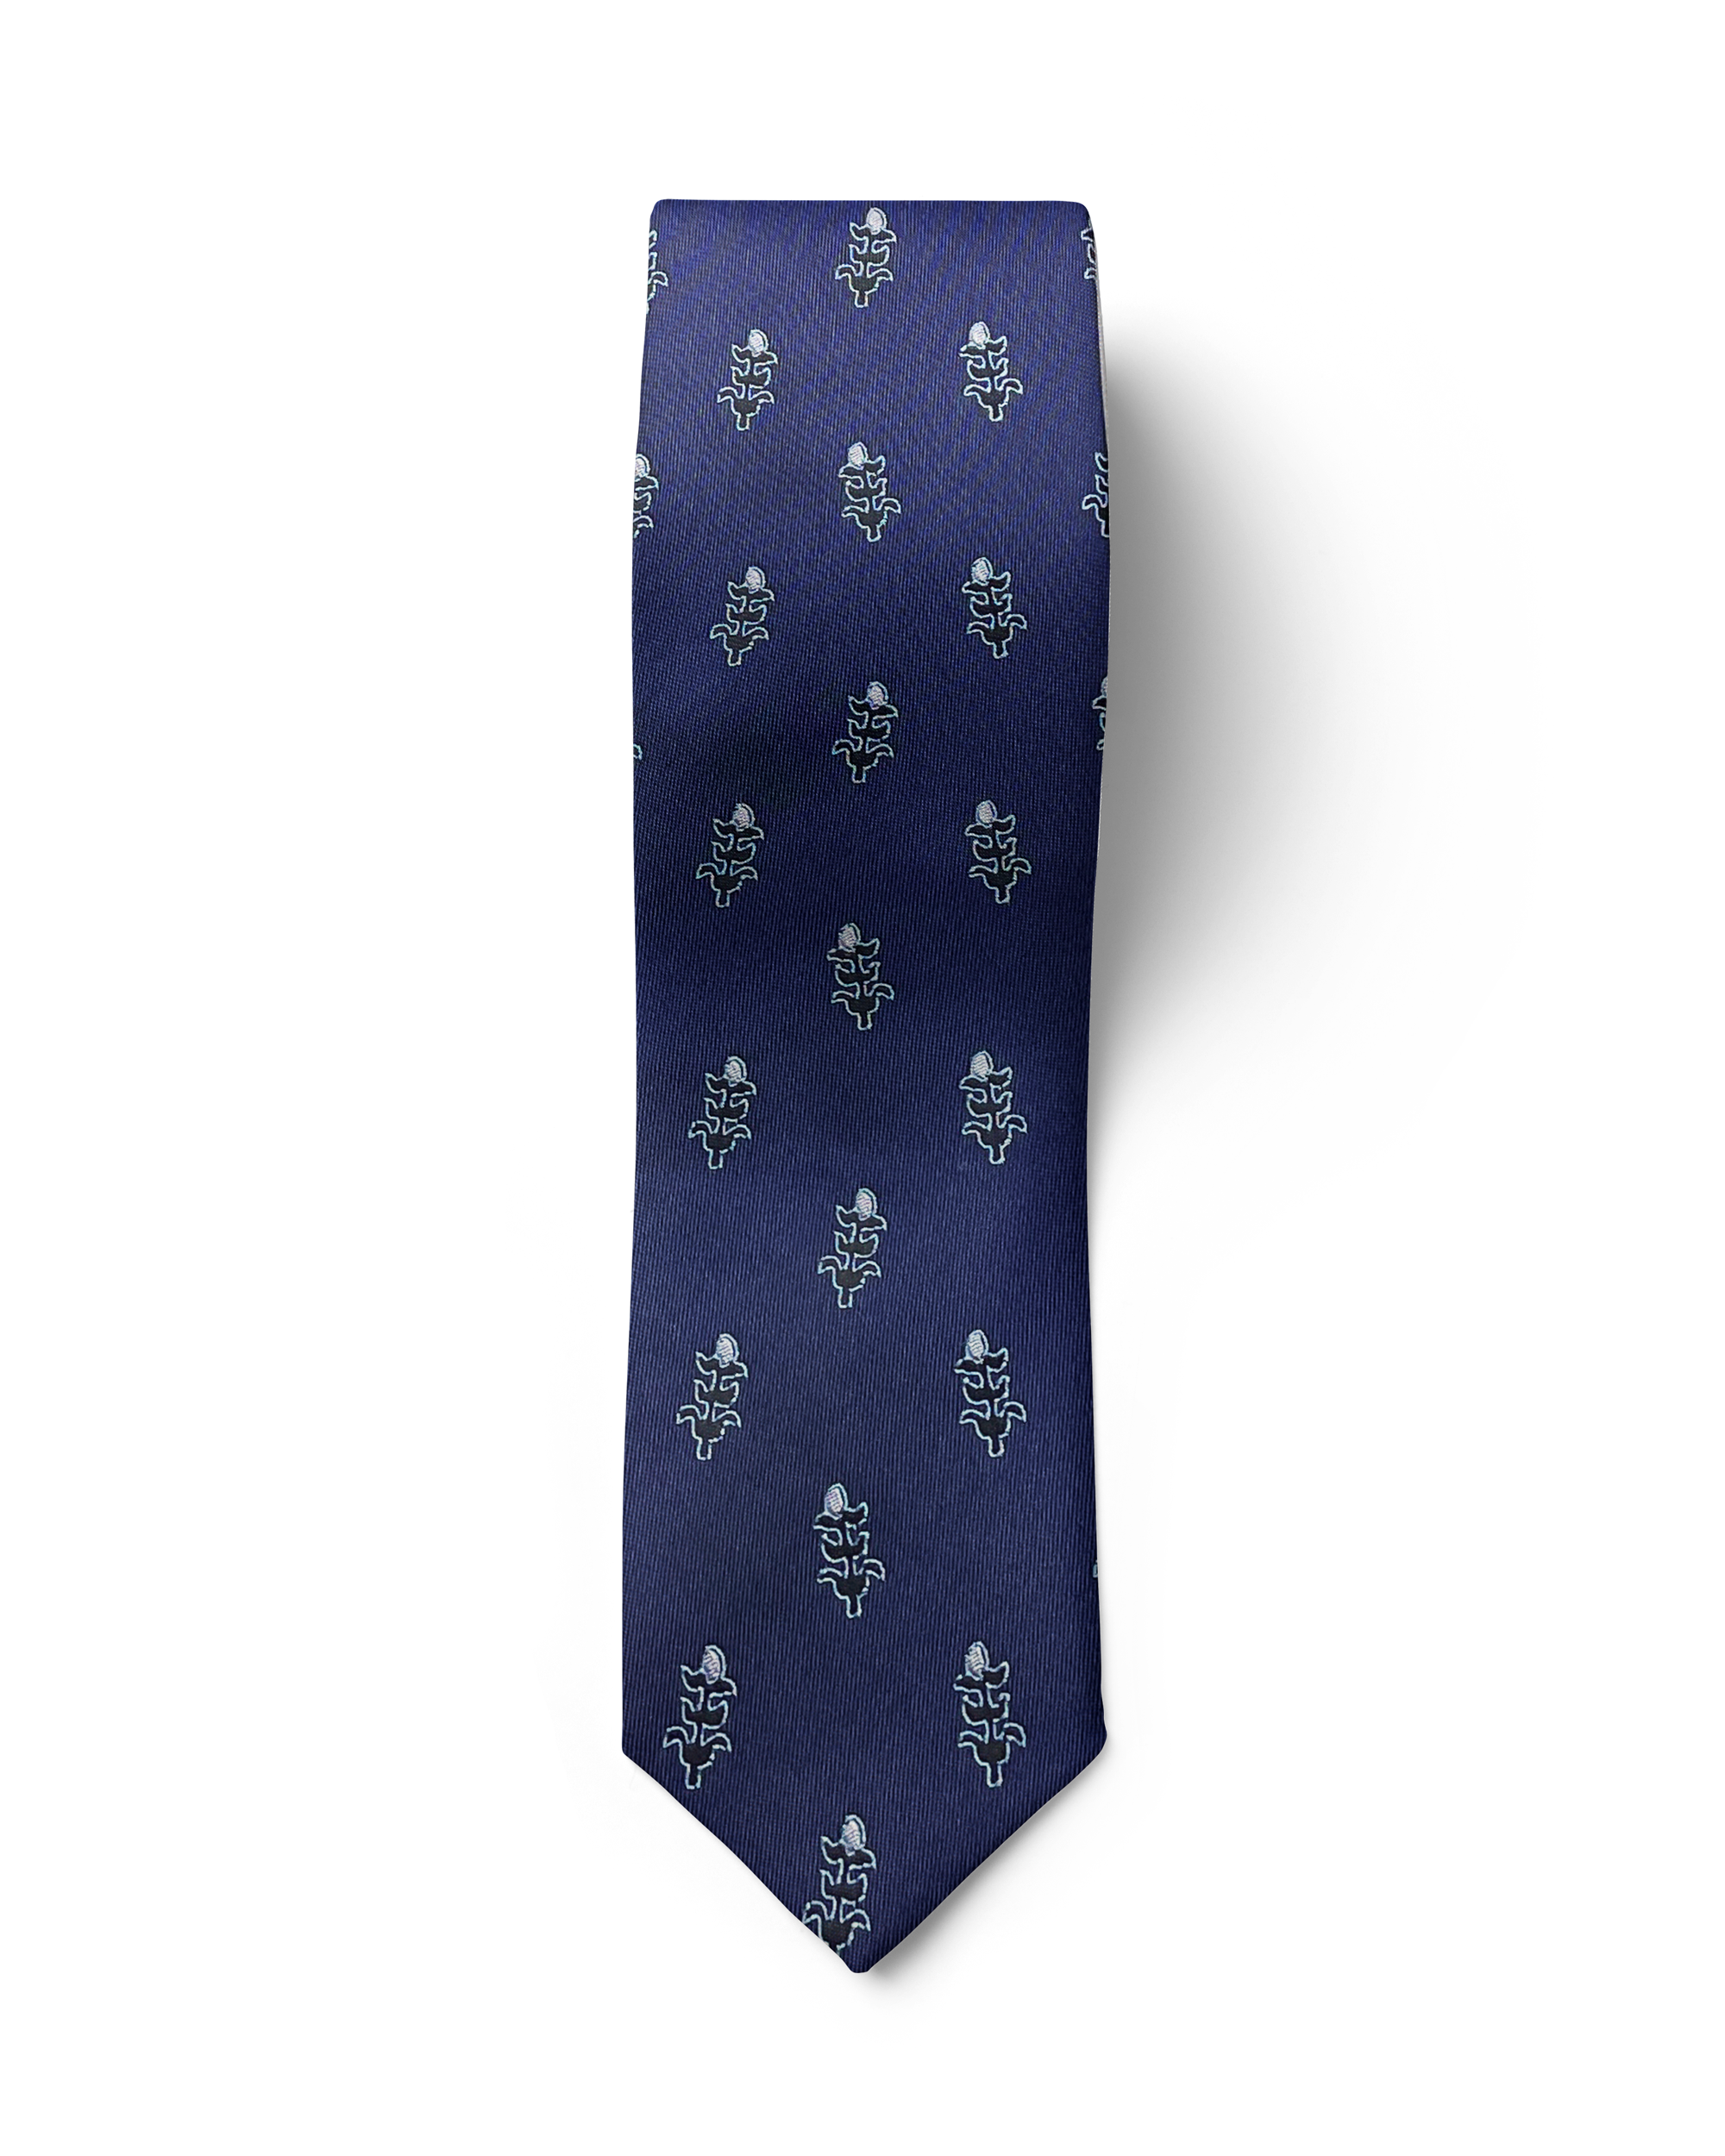 ჟაკარდის აბრეშუმის ჰალსტუხი „თოლიგე“  (ლურჯი)